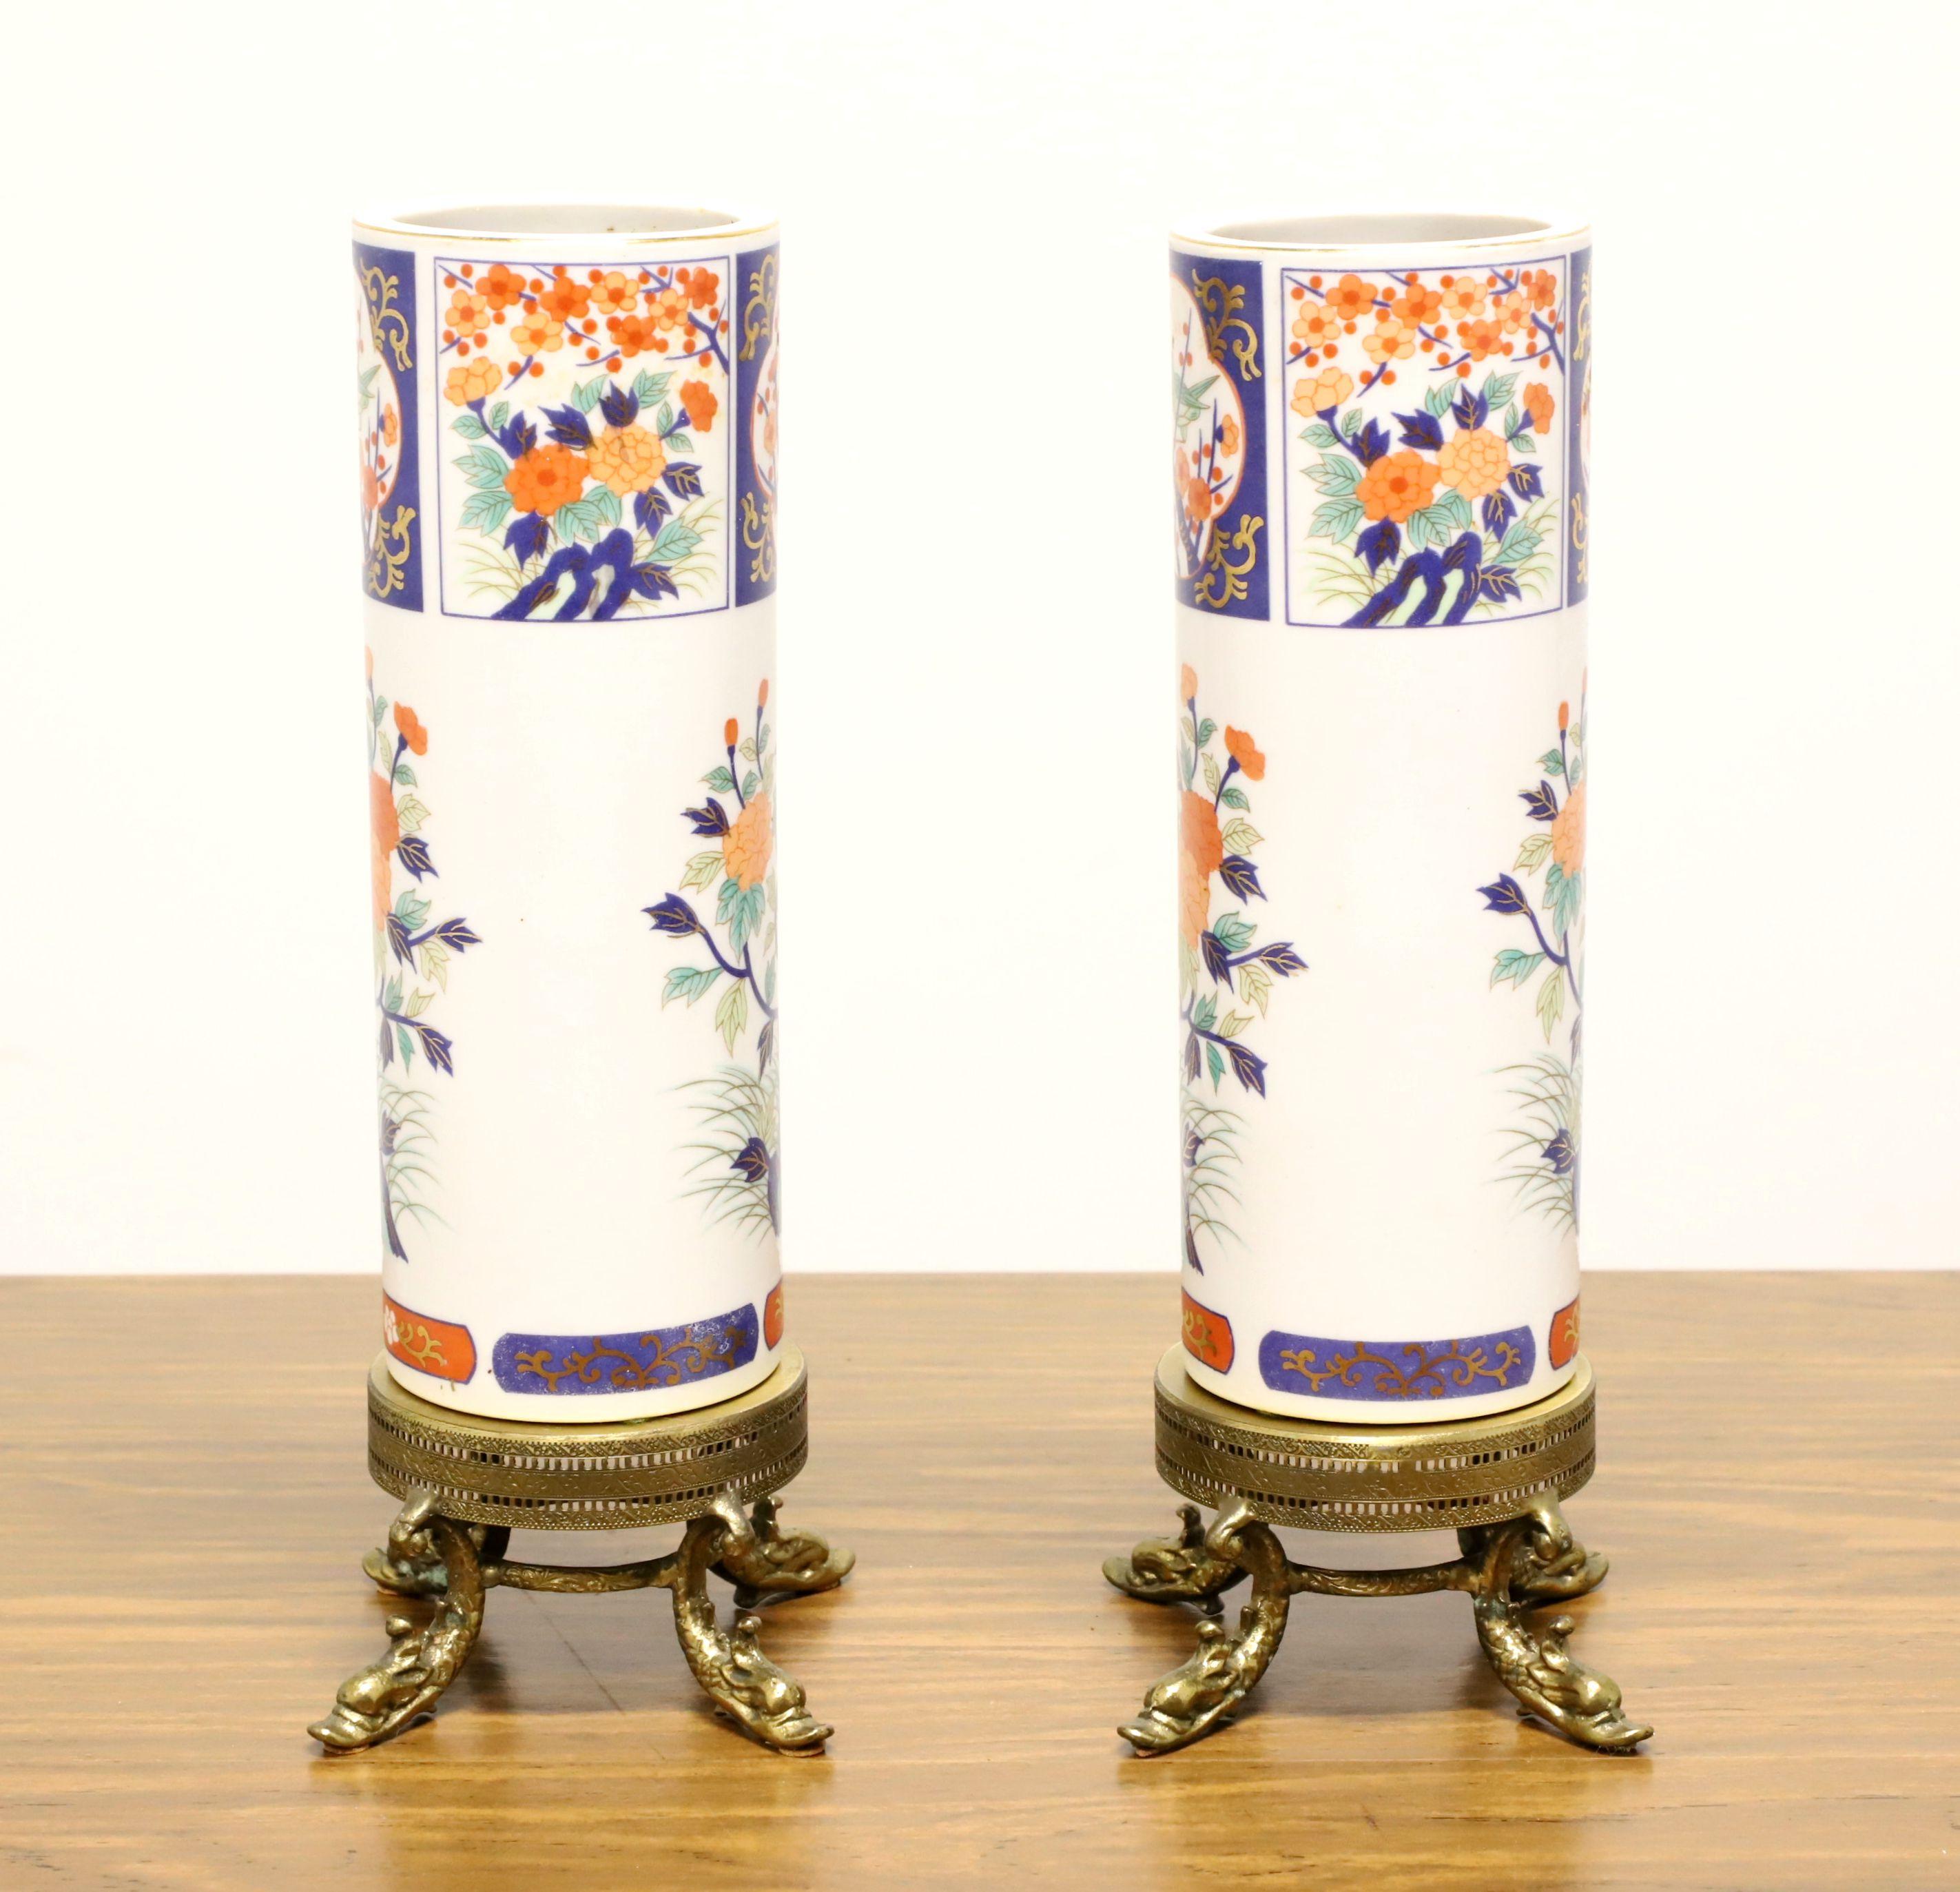 Ein Paar asiatisch inspirierte Tischvasen auf Messingständern, ohne Marke. Handbemaltes Porzellan mit einem Chinoiserie-Muster aus Blättern und Blumen in Weiß-, Blau- und Lachstönen und einer zylindrischen Form. Die beiden Porzellanvasen stehen auf